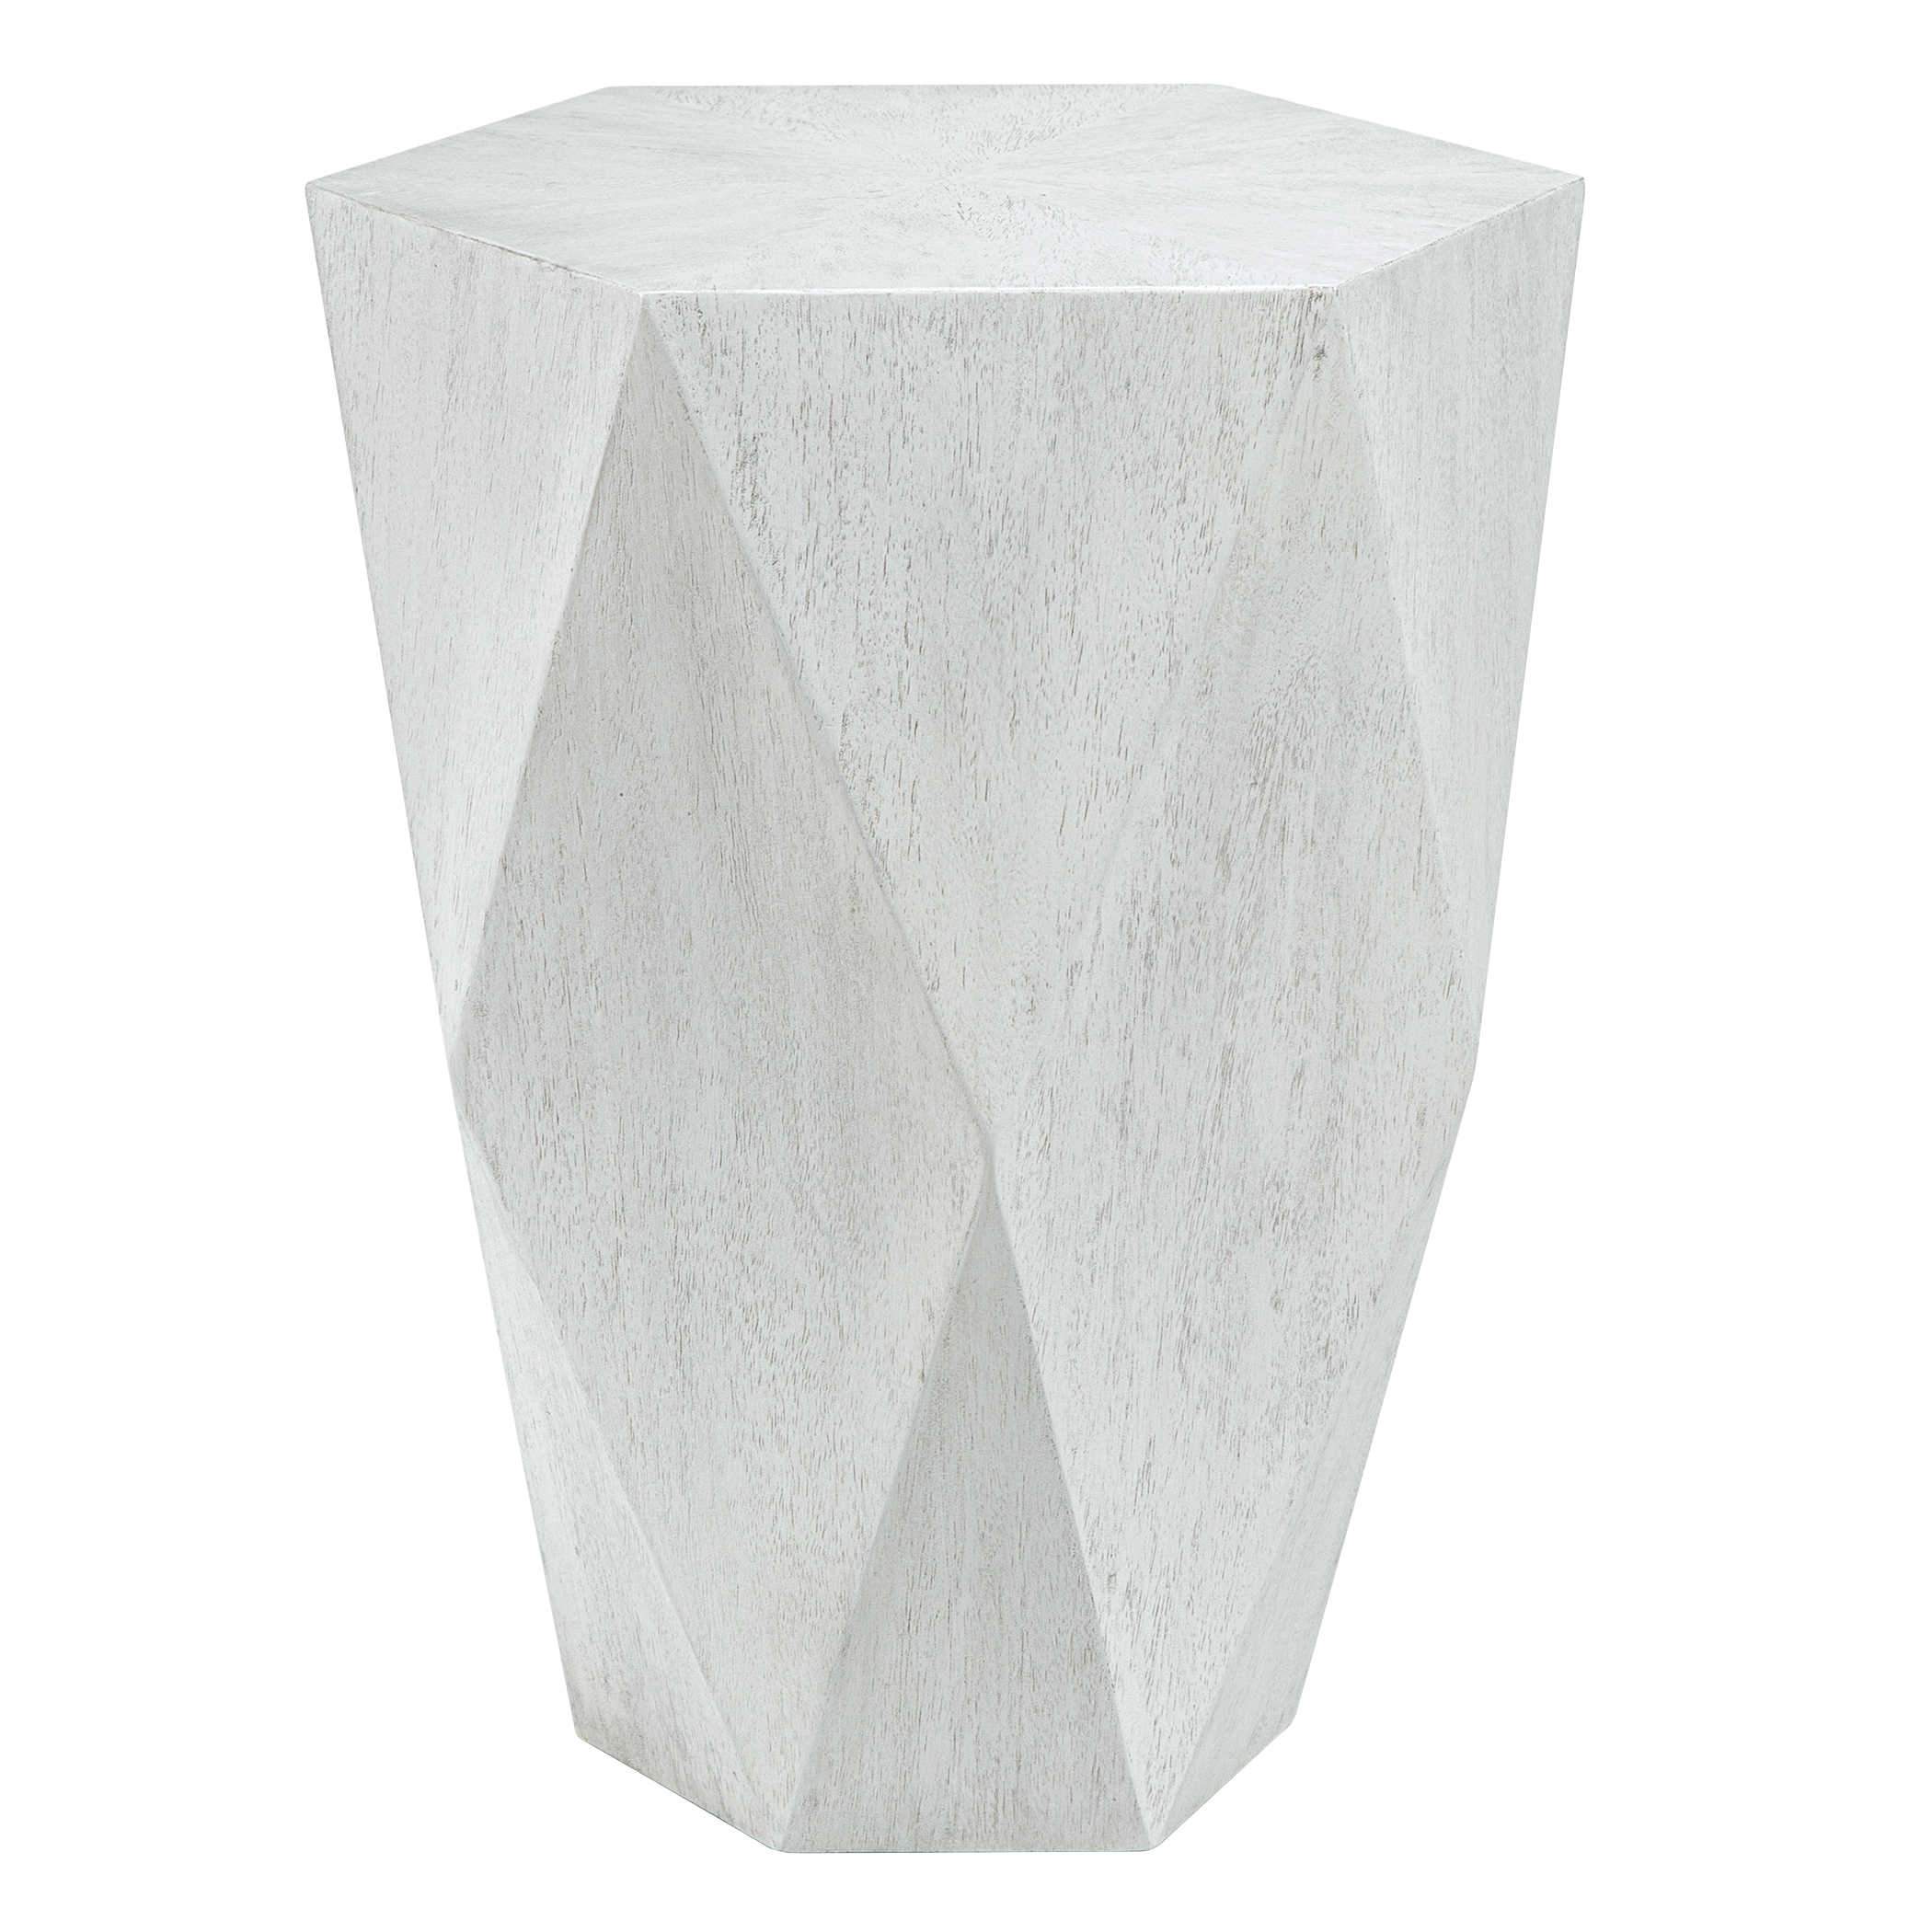 Voker White Geometric End Table Uttermost